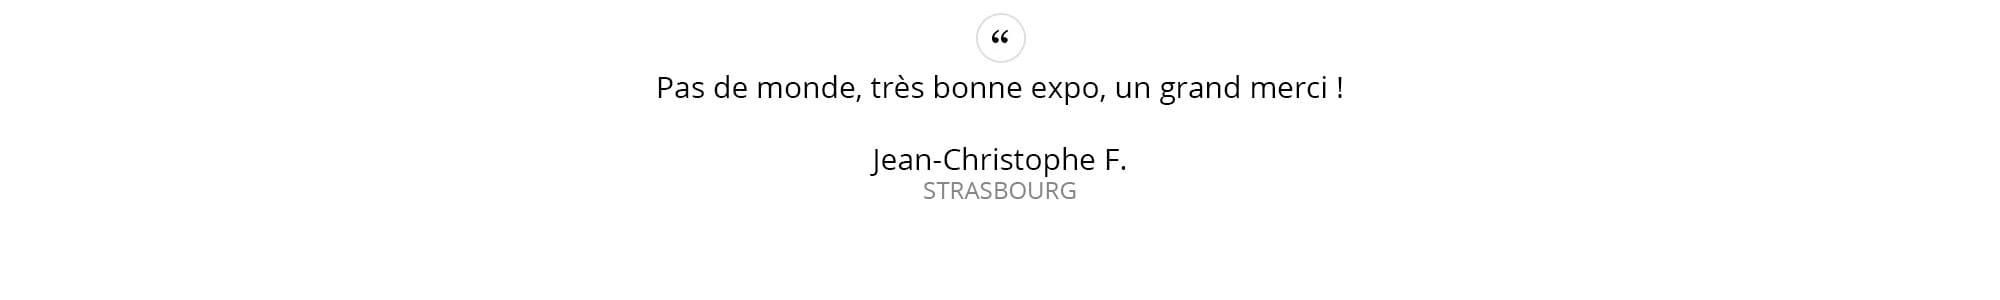 Jean-Christophe-F.---STRASBOURG